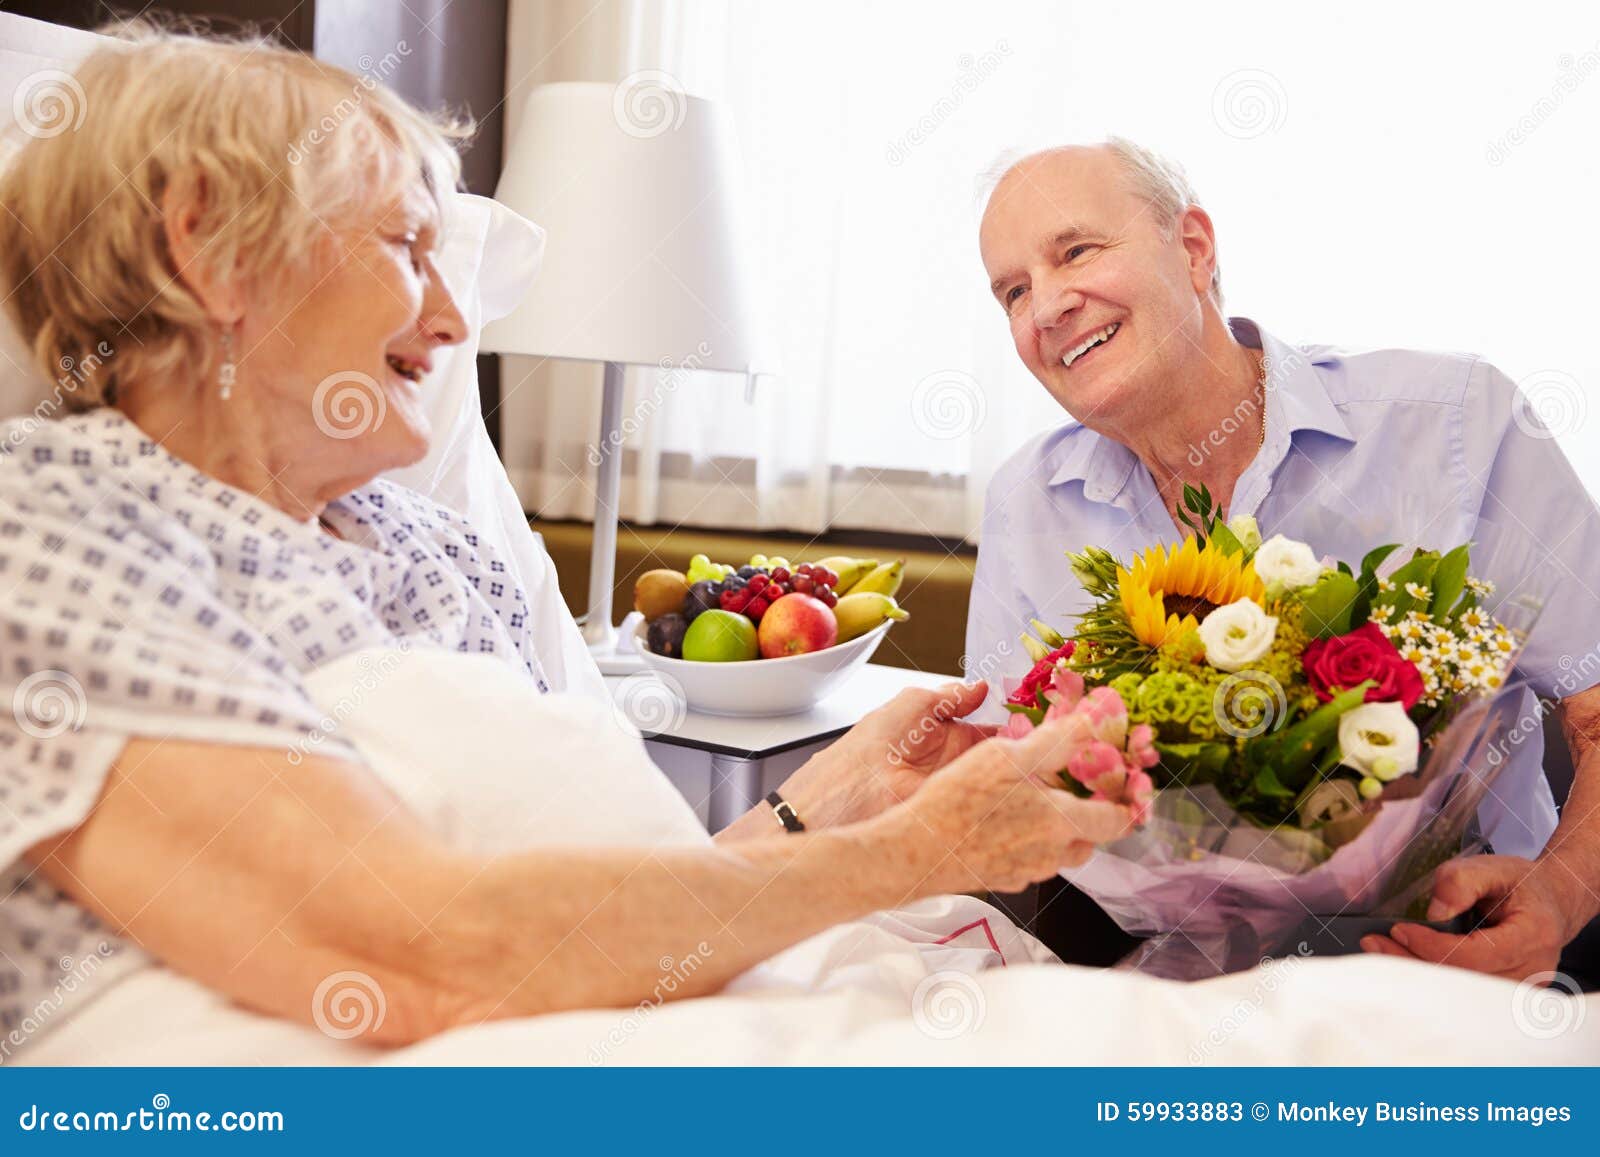 Husband Visiting Senior Wife Hospital Flowers Photos image